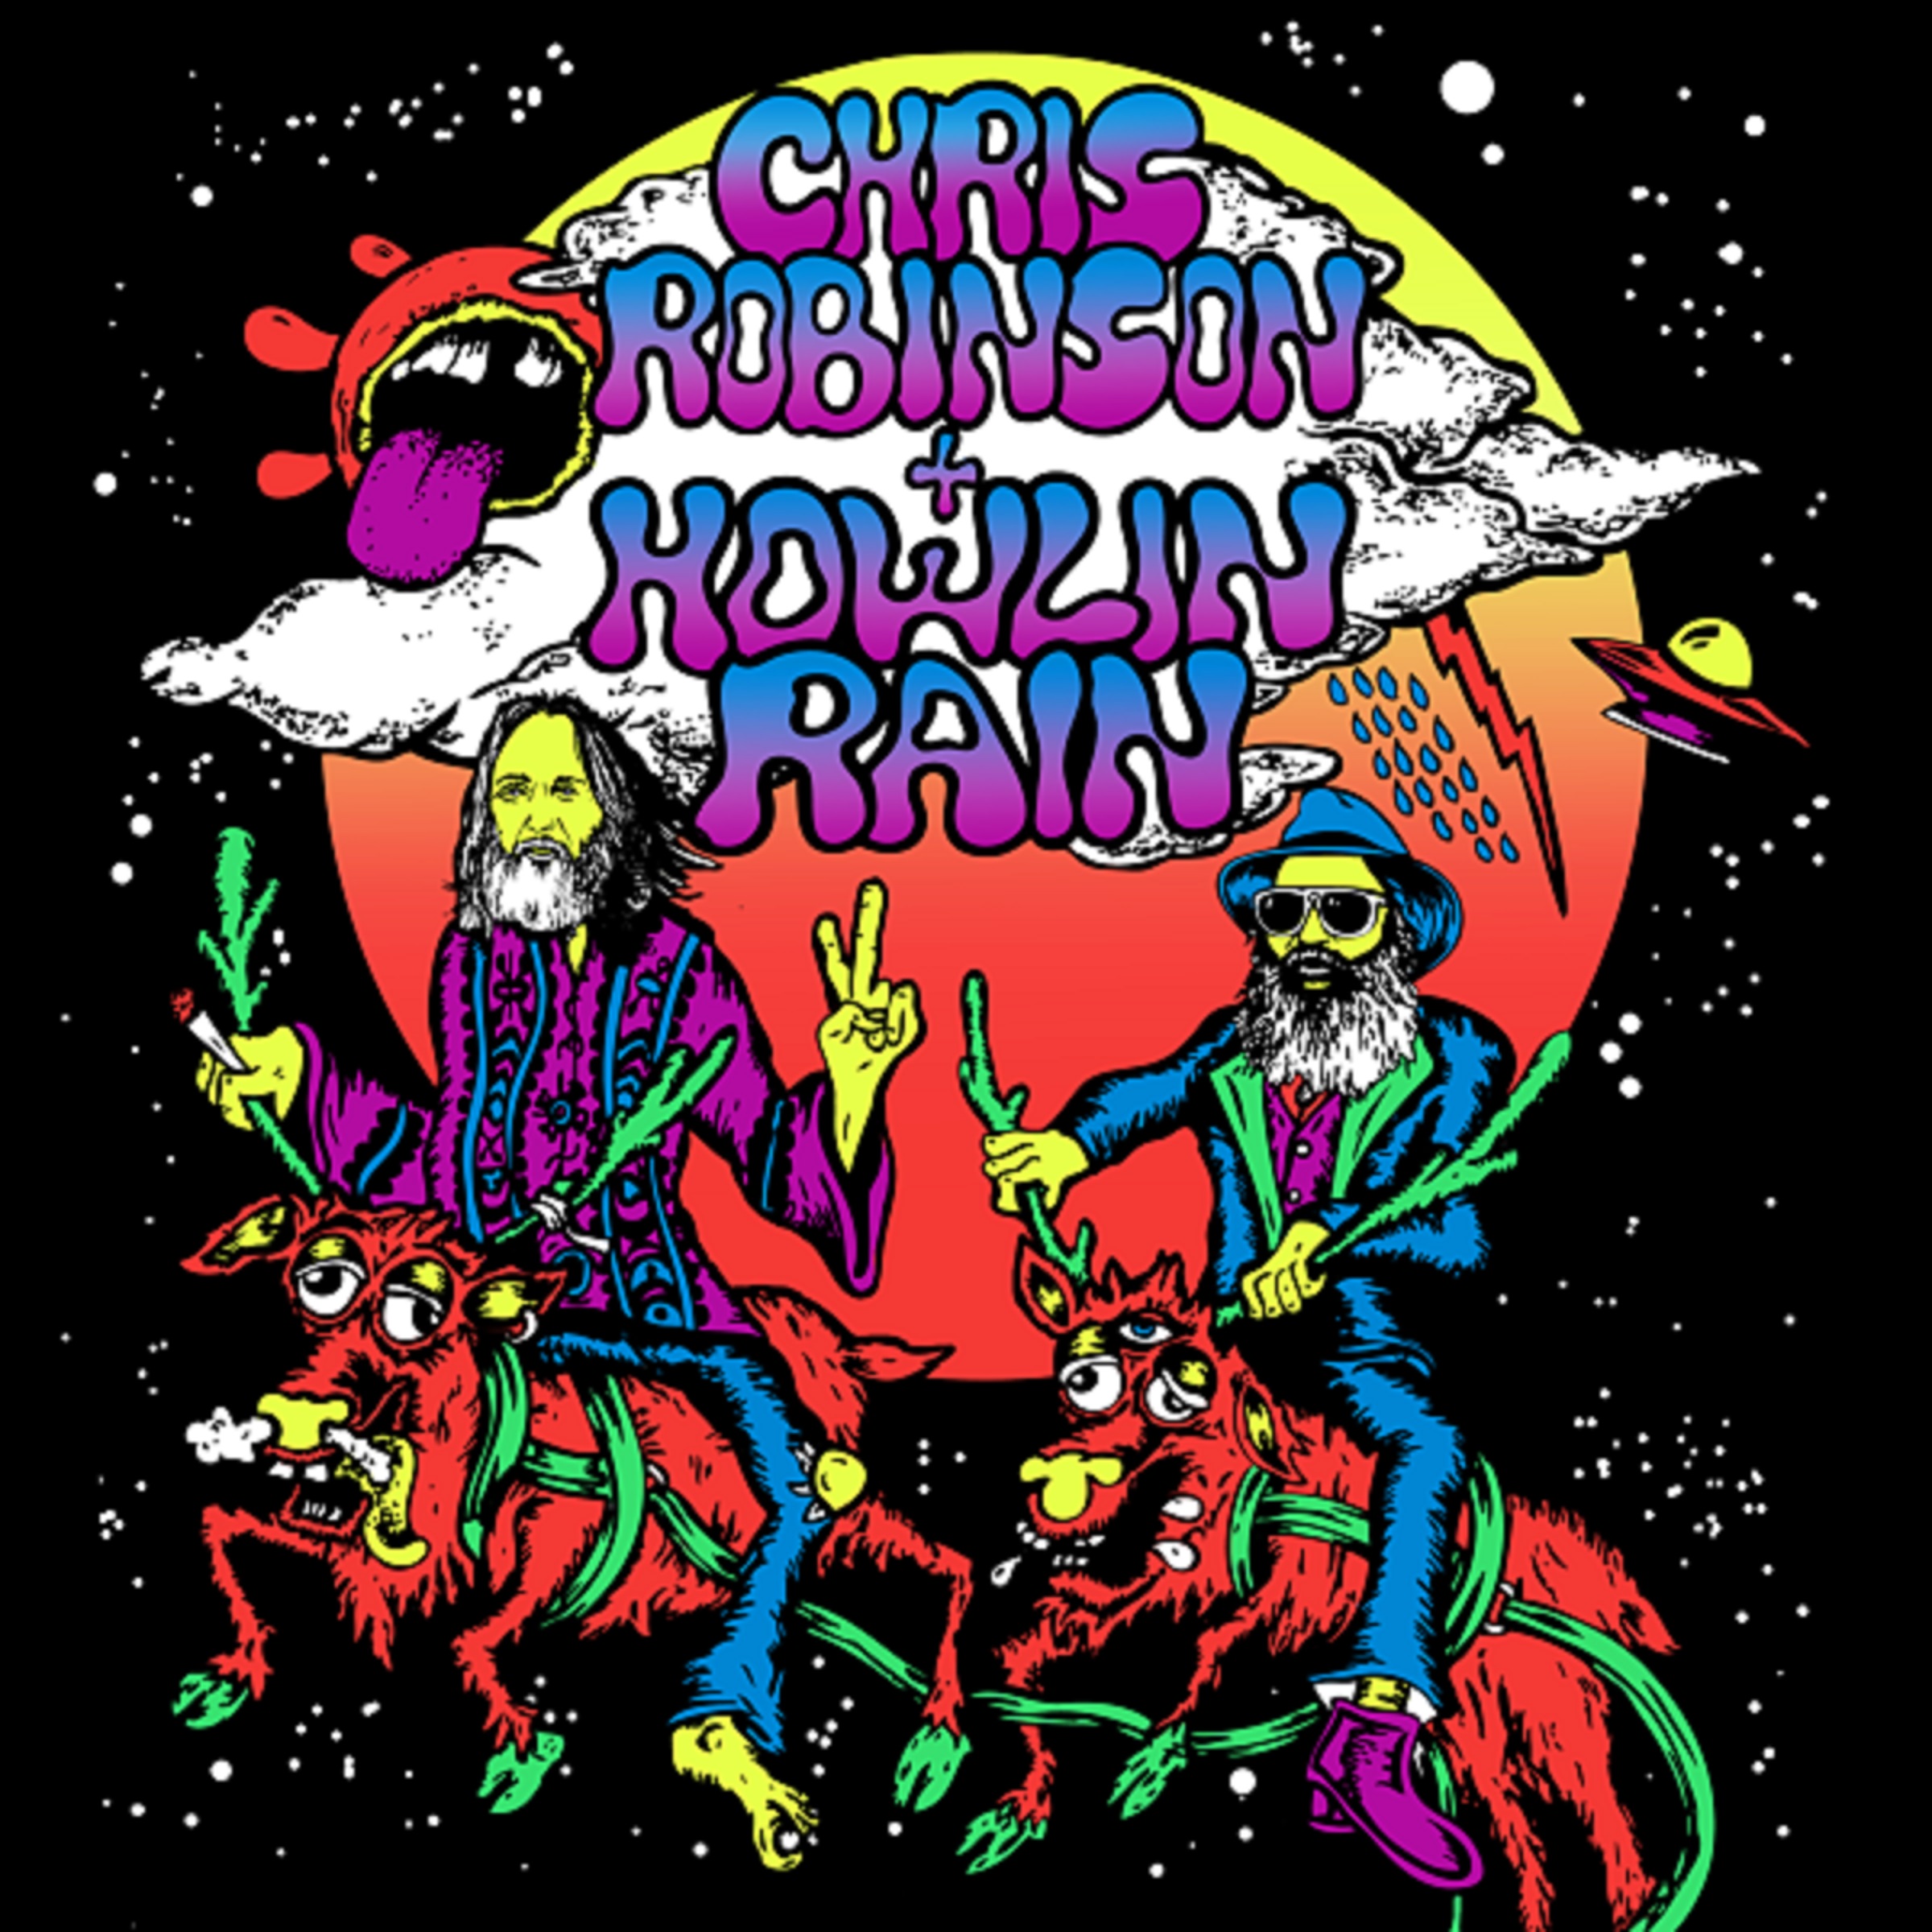 Chris Robinson & Howlin Rain Cover Mott The Hoople